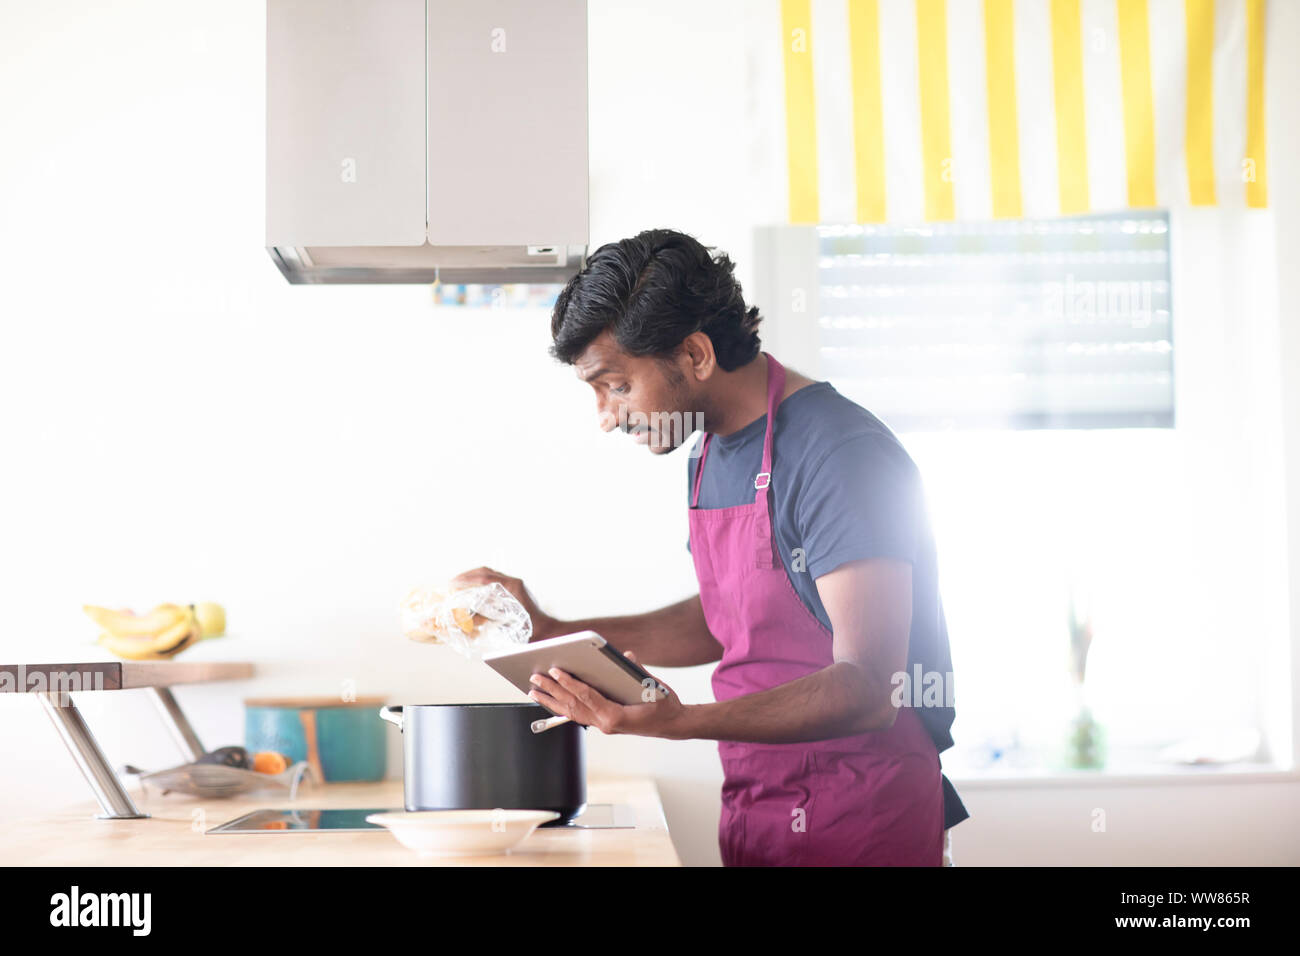 Jeune homme indien dans une cuisine cuisson Banque D'Images